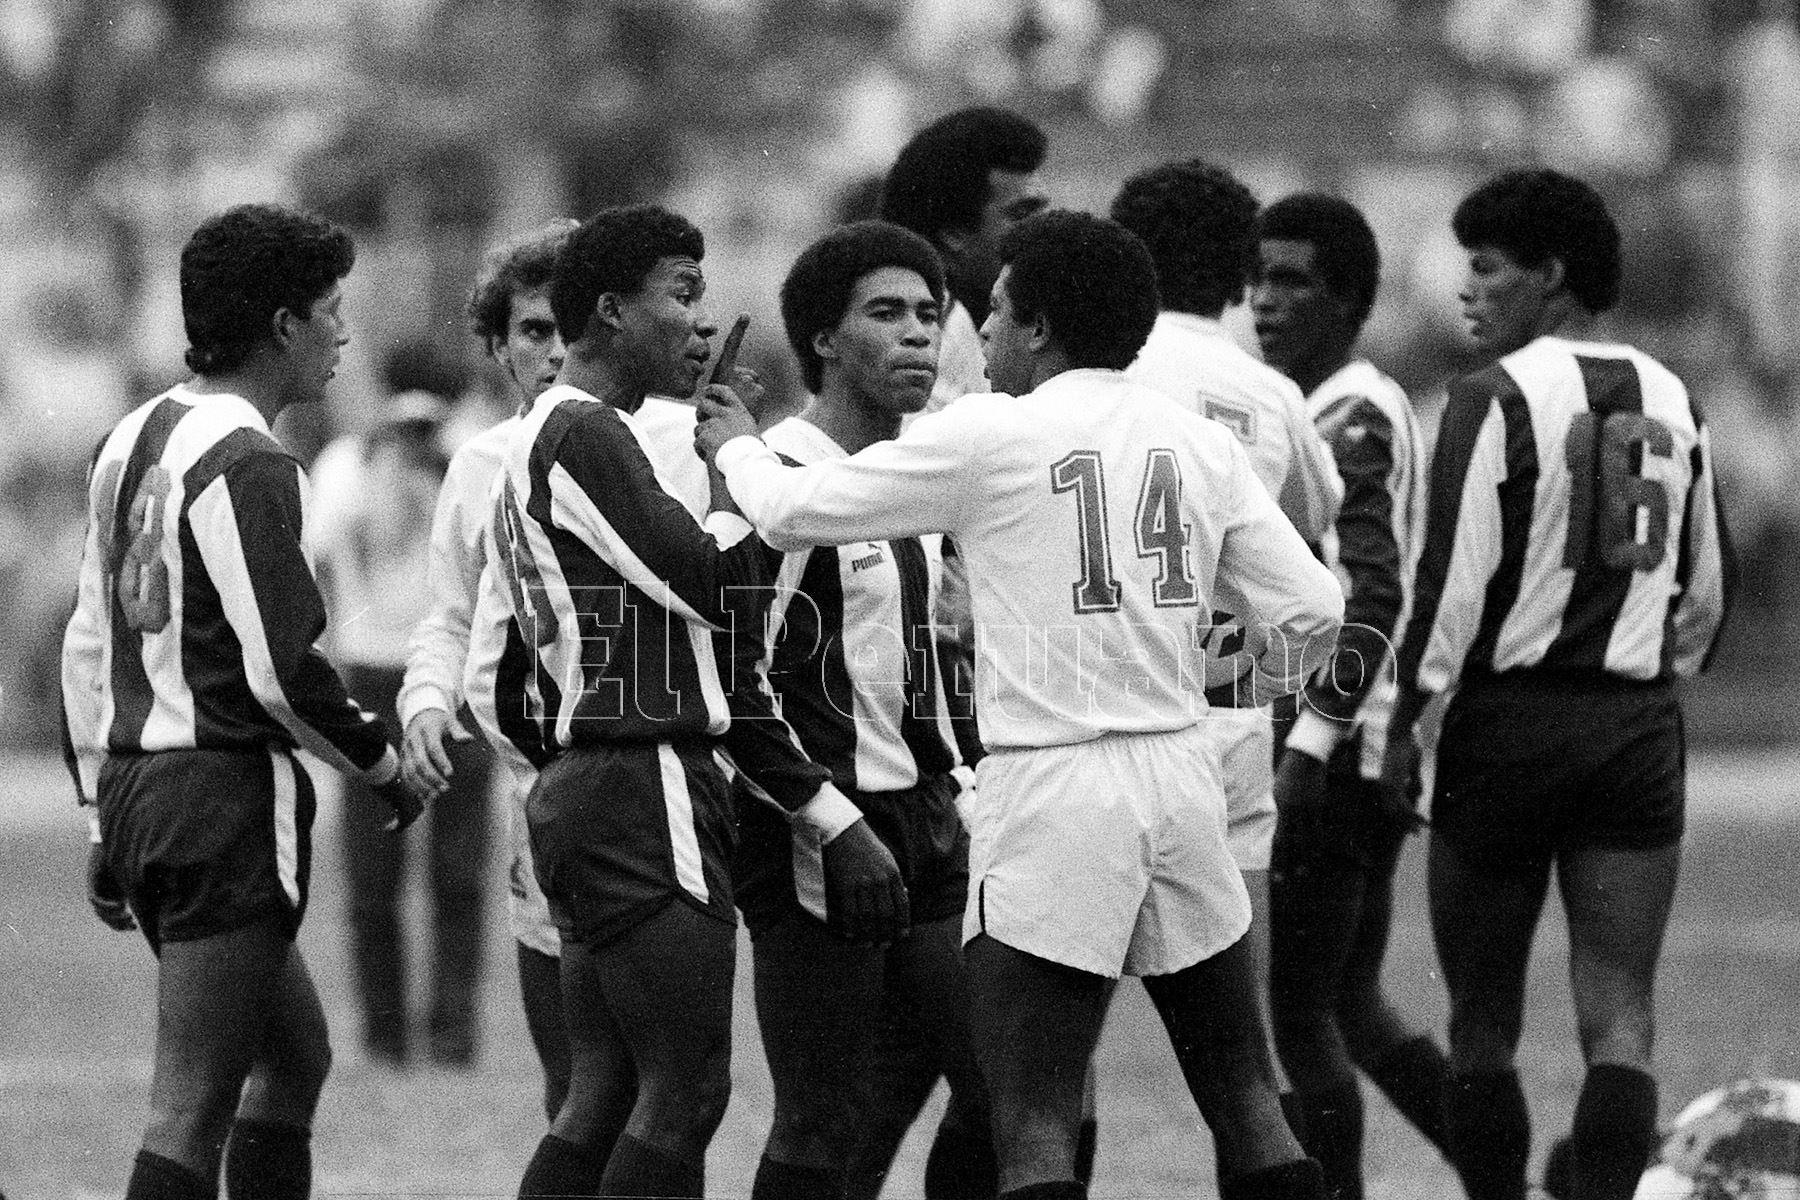 Lima - 1 noviembre 1987 / El delantero aliancista Luis Escobar en el encuentro entre Alianza Lima y Universitario. El cuadro aliancista ganó el clásico 1-0 con gol del "Potrillo".